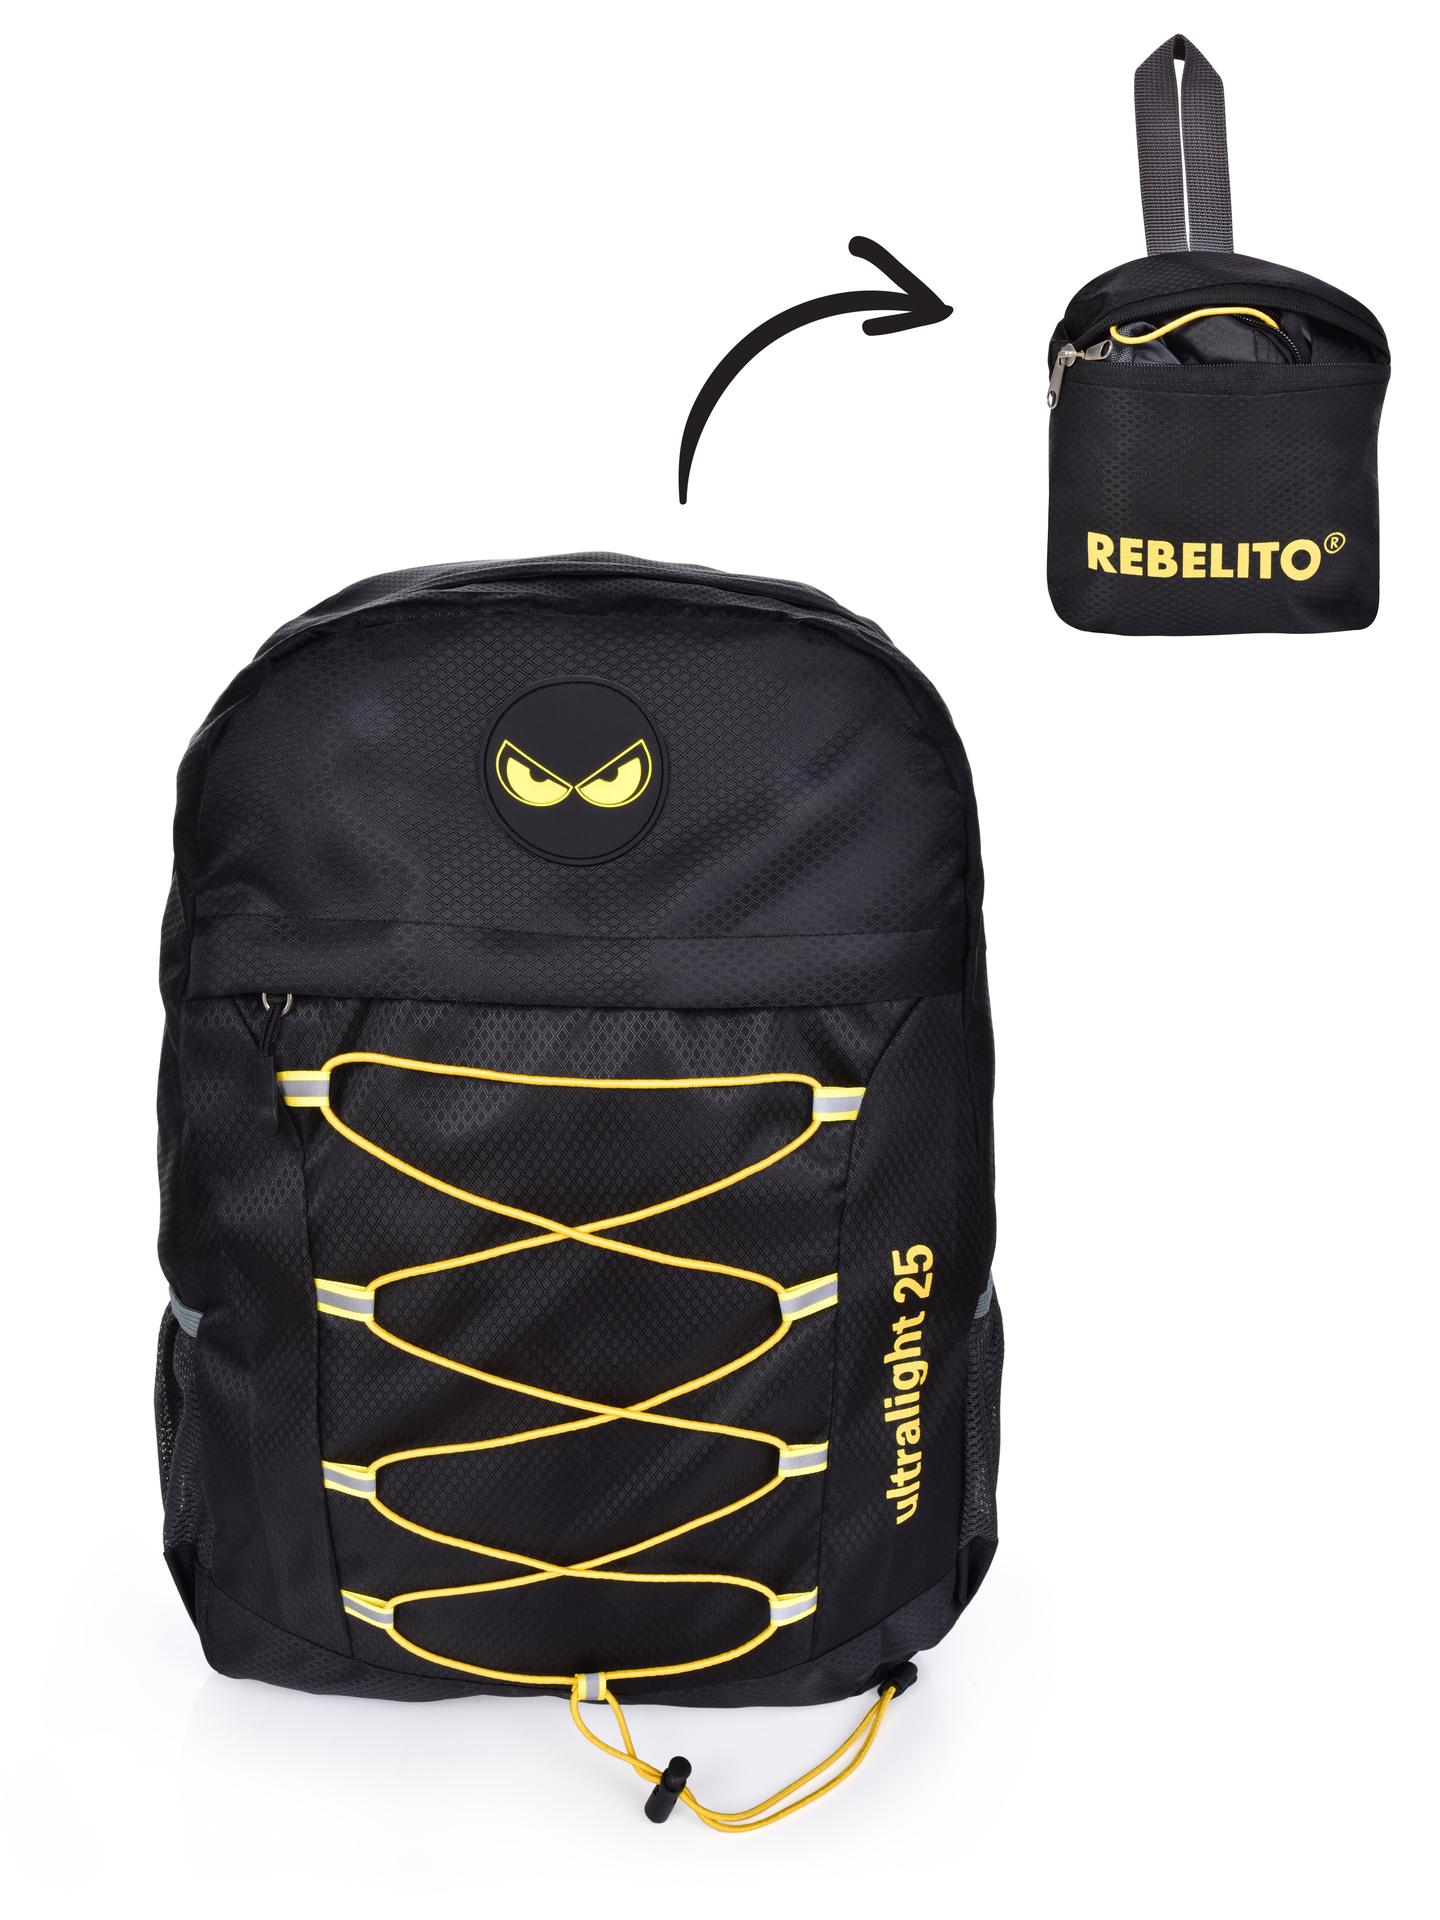 Ultralehký batoh REBELITO® ULTRALIGHT 25 litrů, skládací